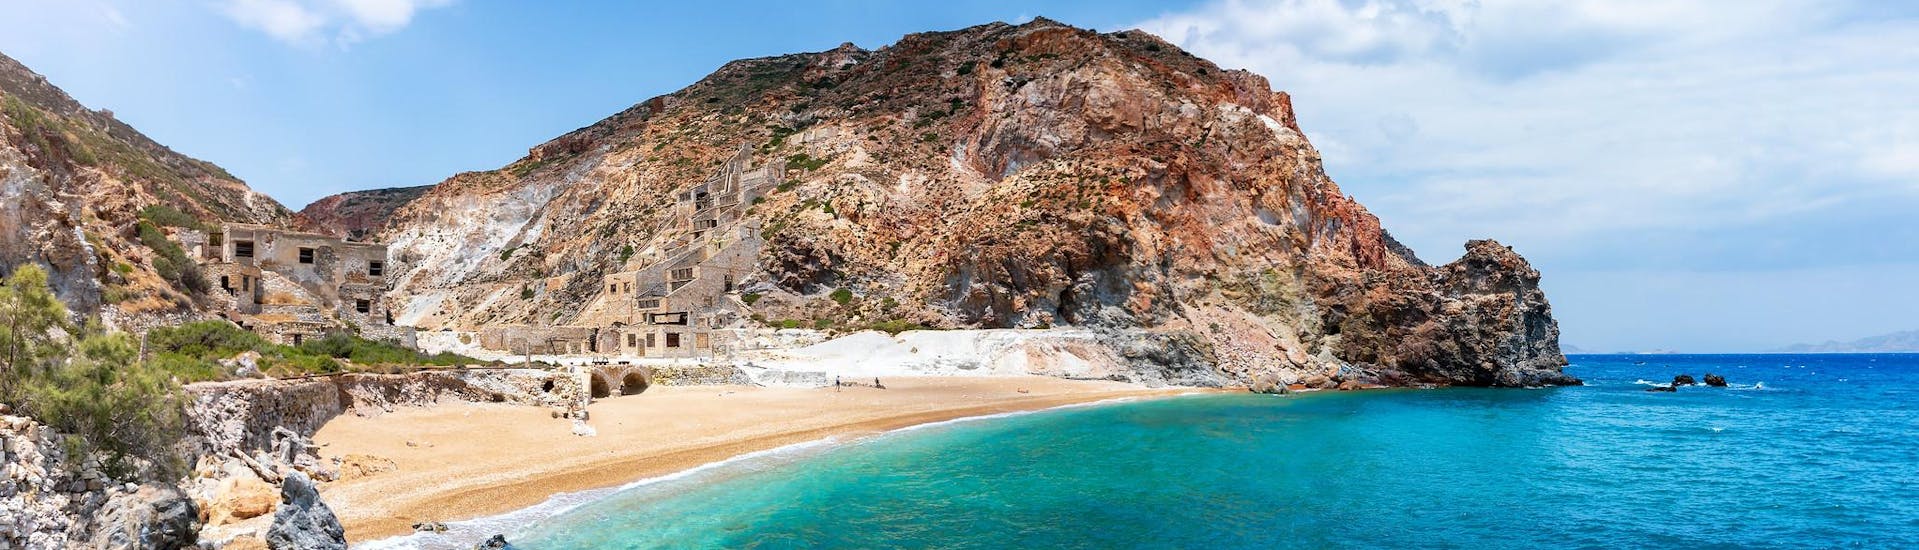 La plage isolée de Thiorichia sur l'île de Milos, que l'on peut visiter en faisant une excursion en bateau.